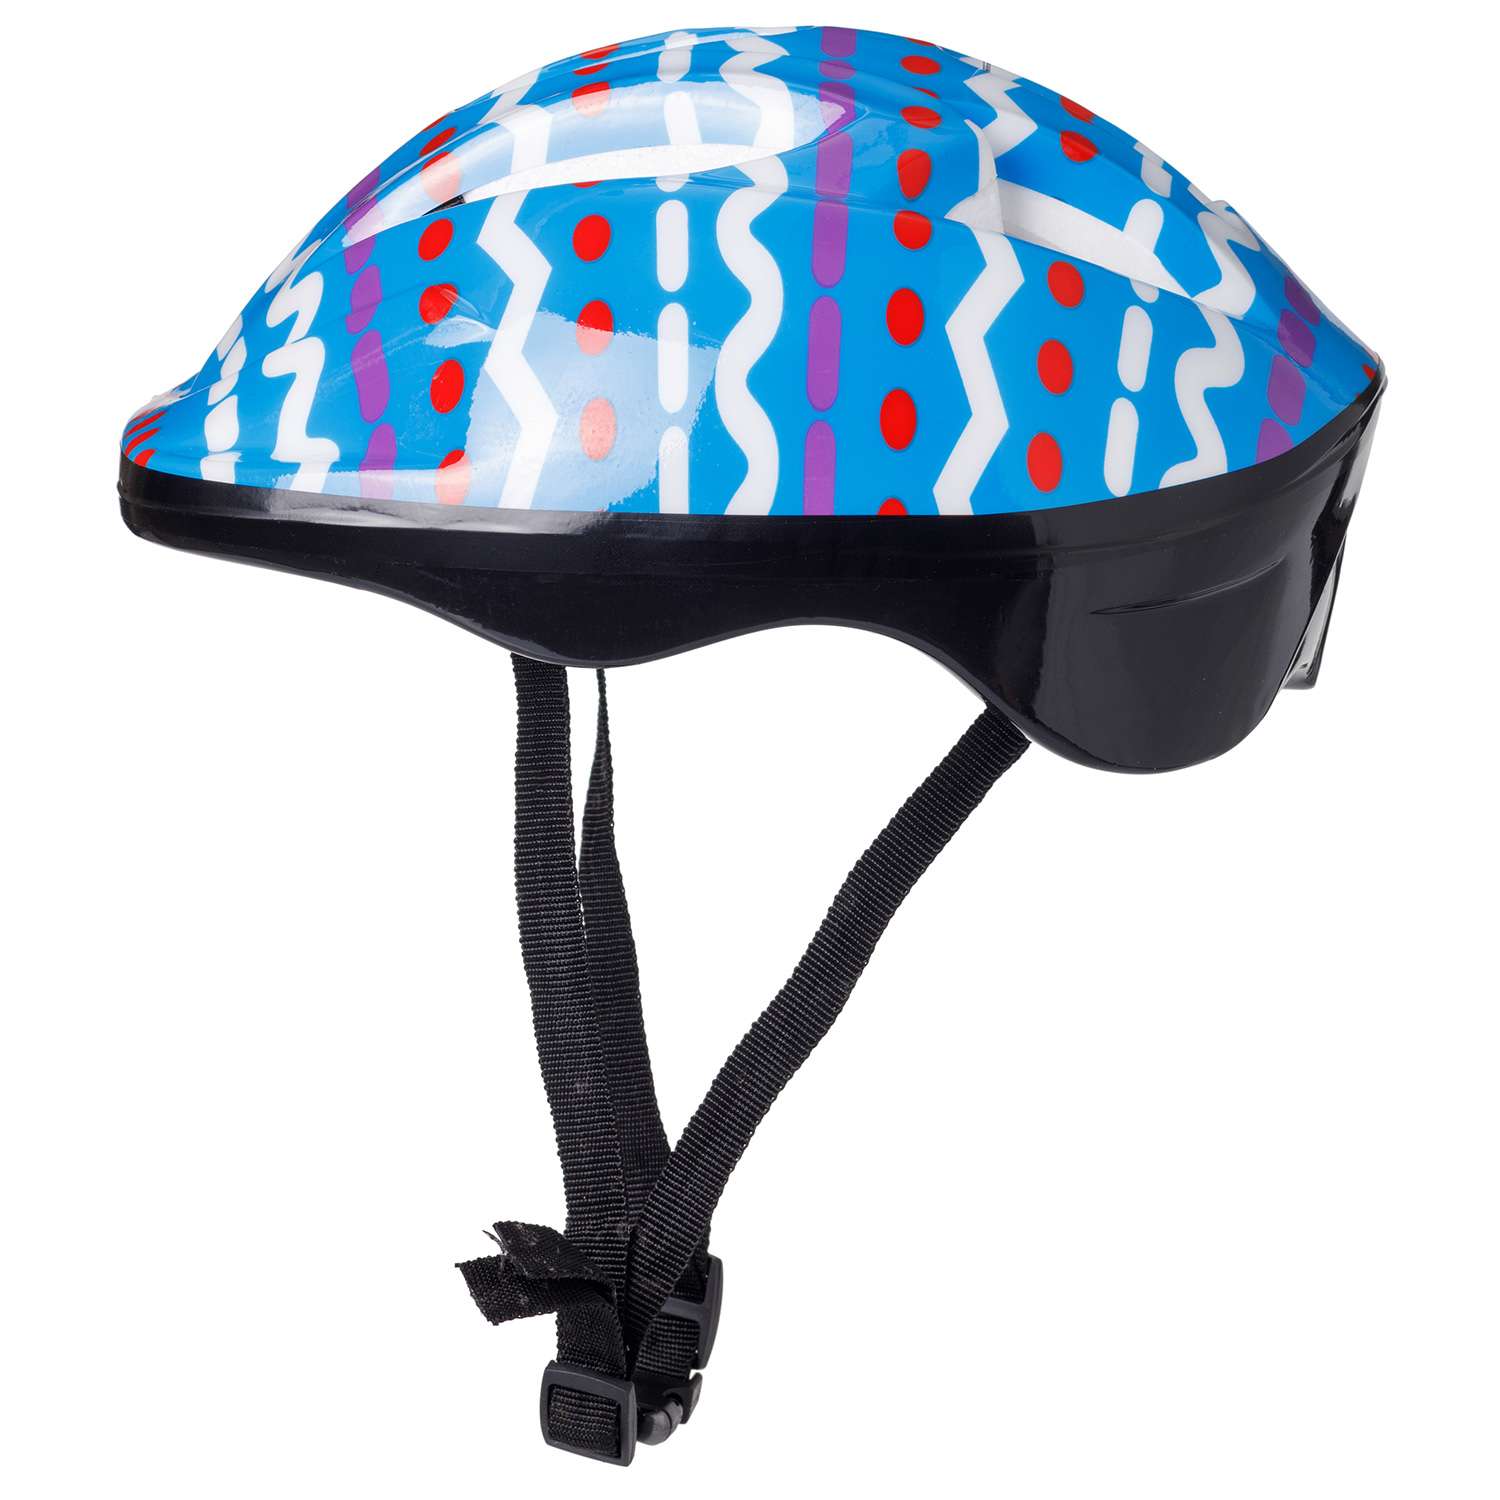 Защита Шлем BABY STYLE для роликовых коньков синий принт обхват 57 см - фото 2